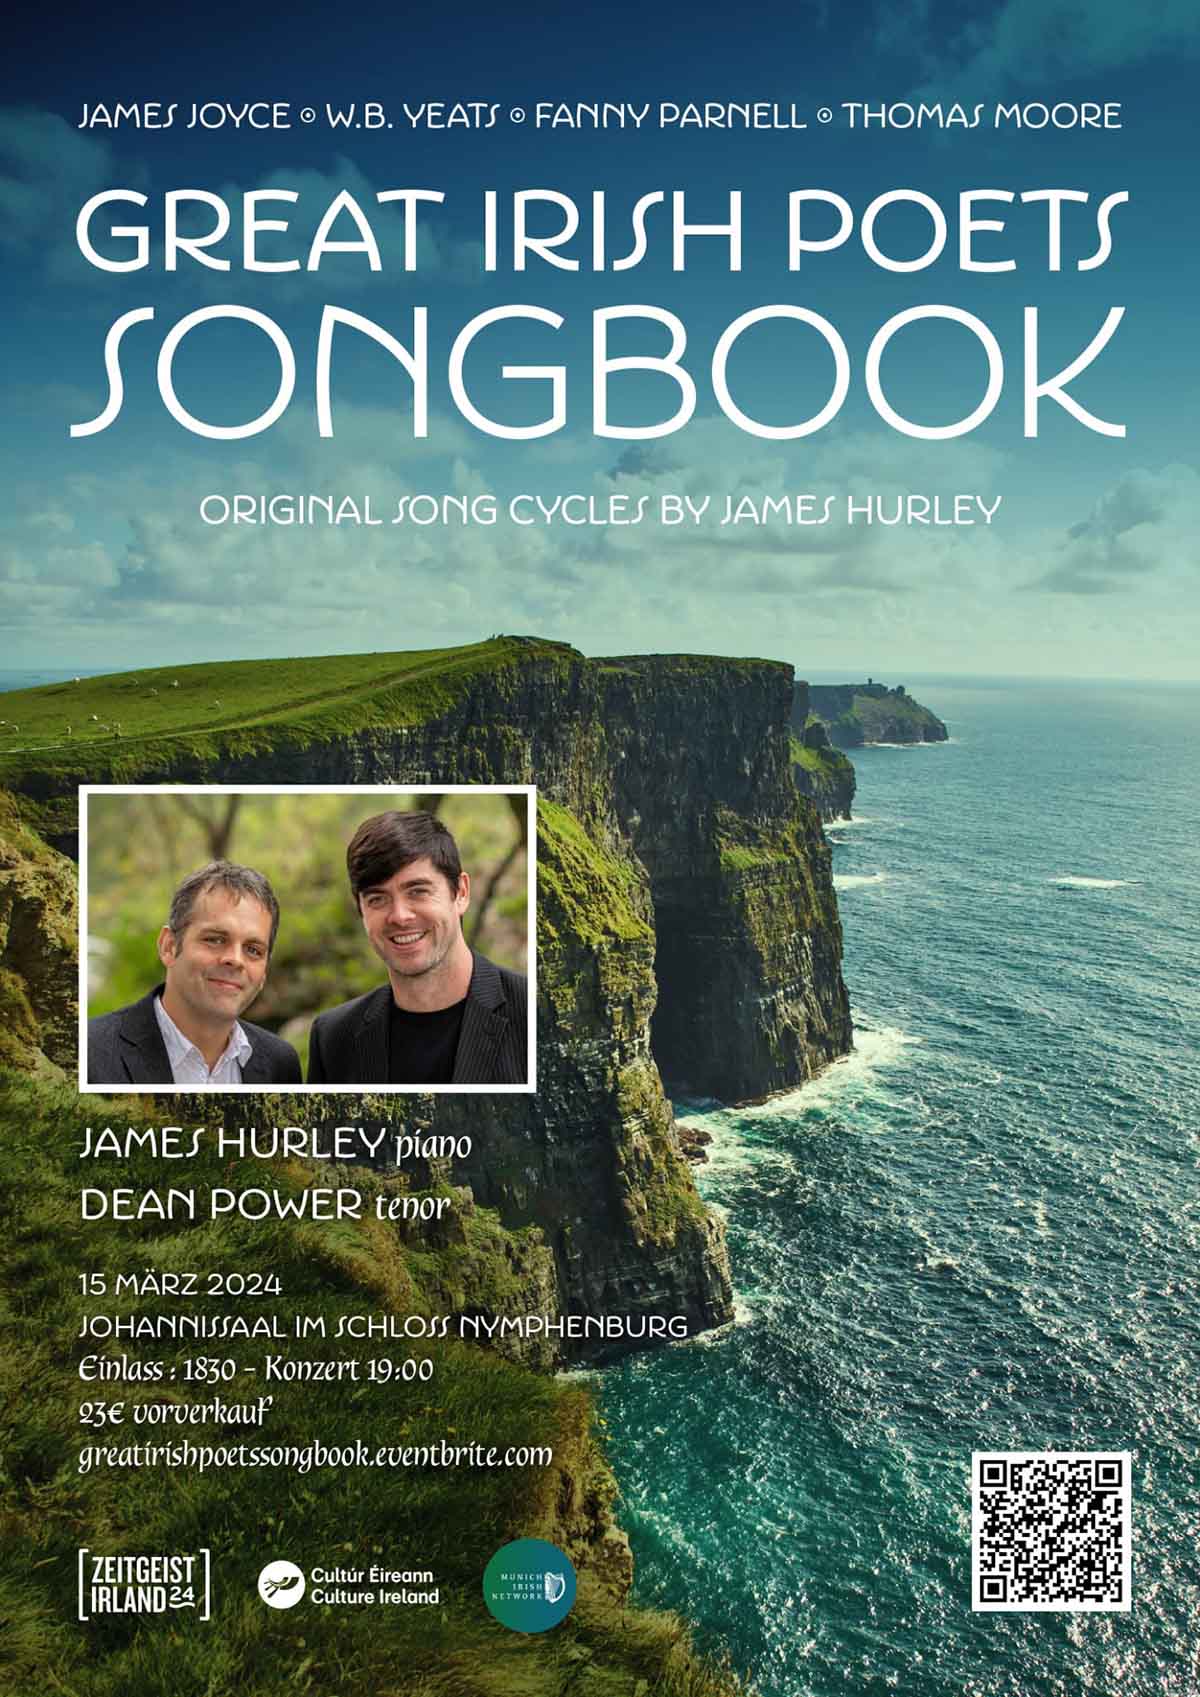 Great Irish Poets Songbook